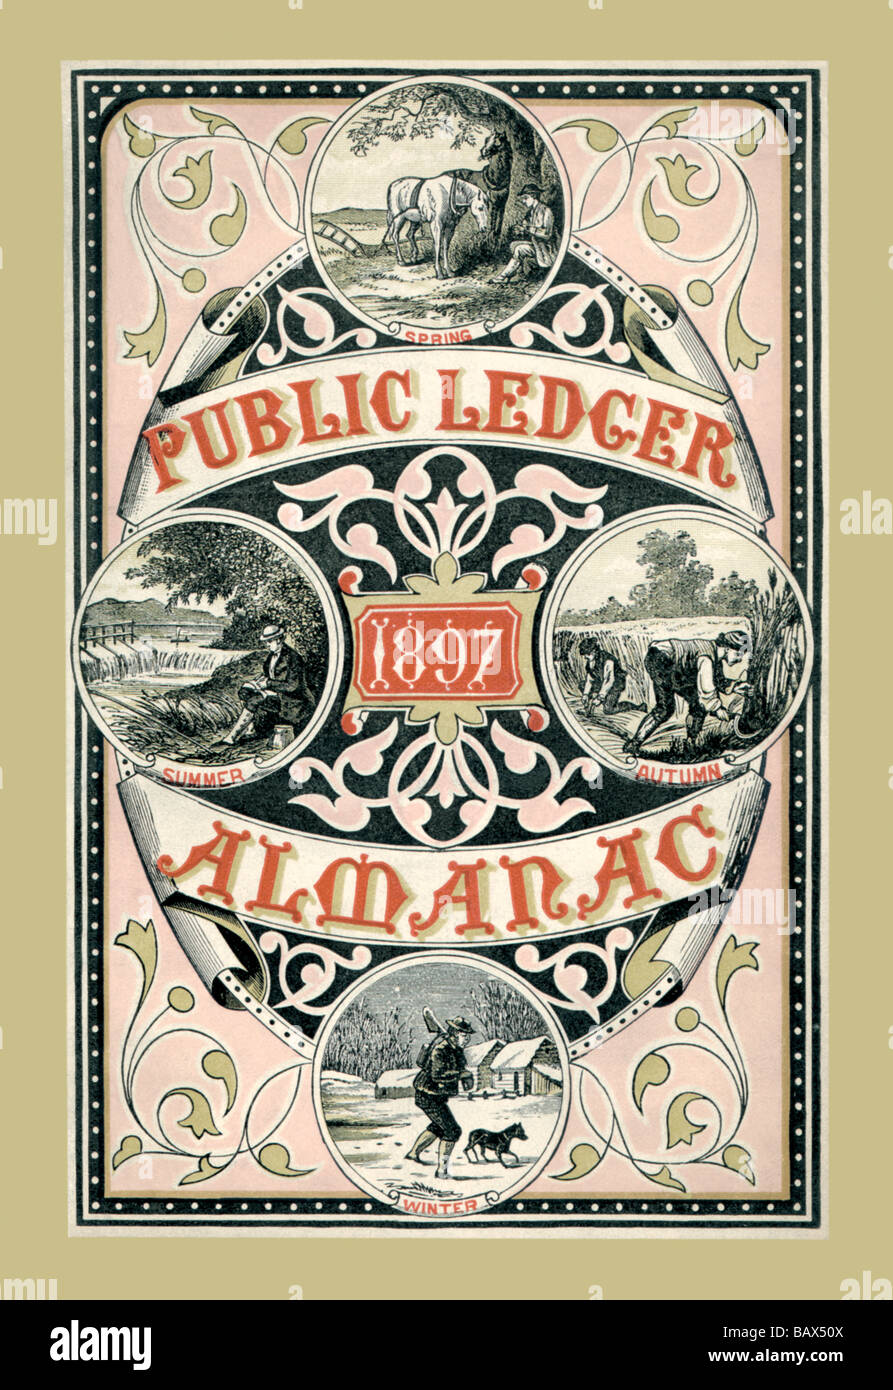 Öffentliche Ledger Almanach 1897 Stockfoto